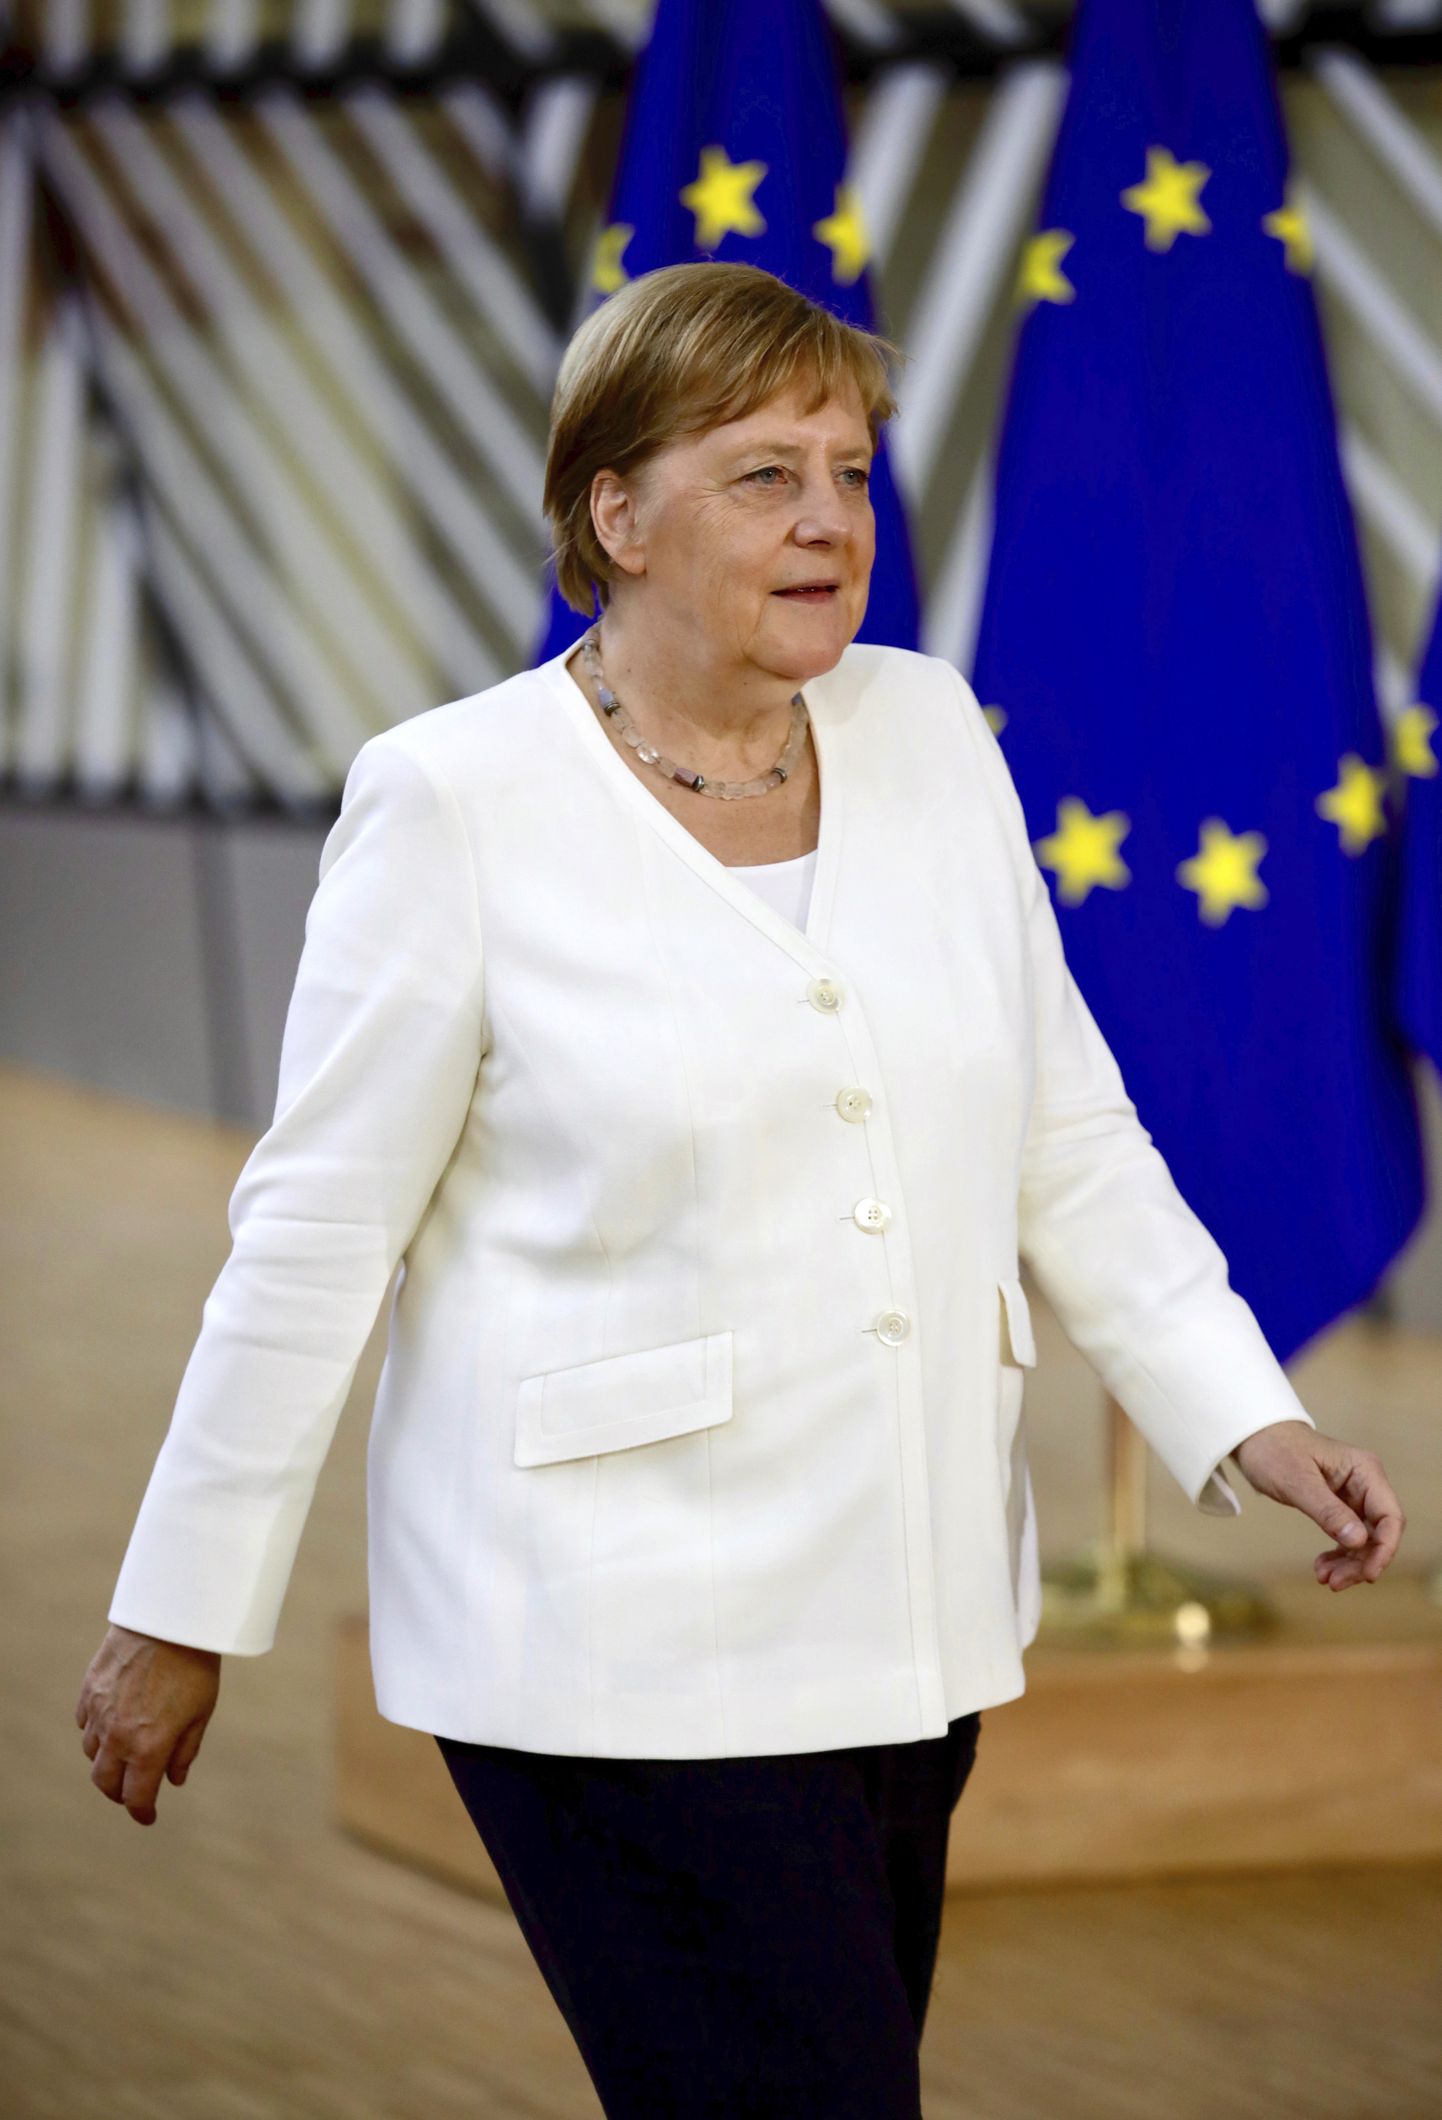 Saksa kantsler Angela Merkel pühapäeval Brüsselis Euroopa Liidu erakorralisele tippkohtumisele saabumas.